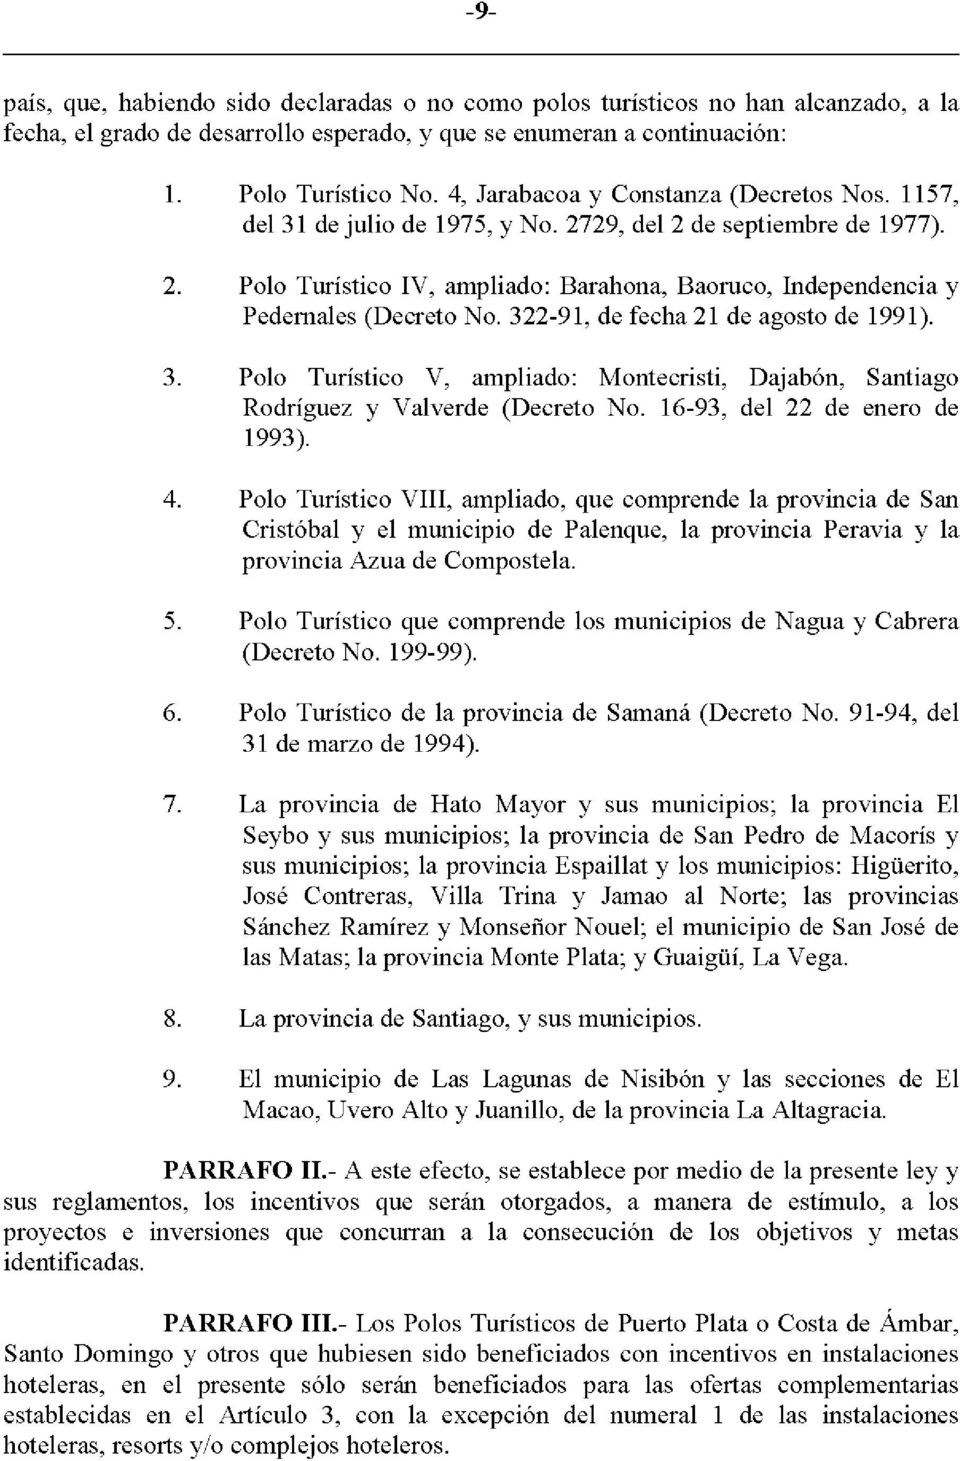 322-91, de fecha 21 de agosto de 1991). 3. Polo Turistico V, ampliado: Montecristi, Dajabon, Santiago Rodriguez y Valverde (Decreto No. 16-93, del 22 de enero de 1993). 4.